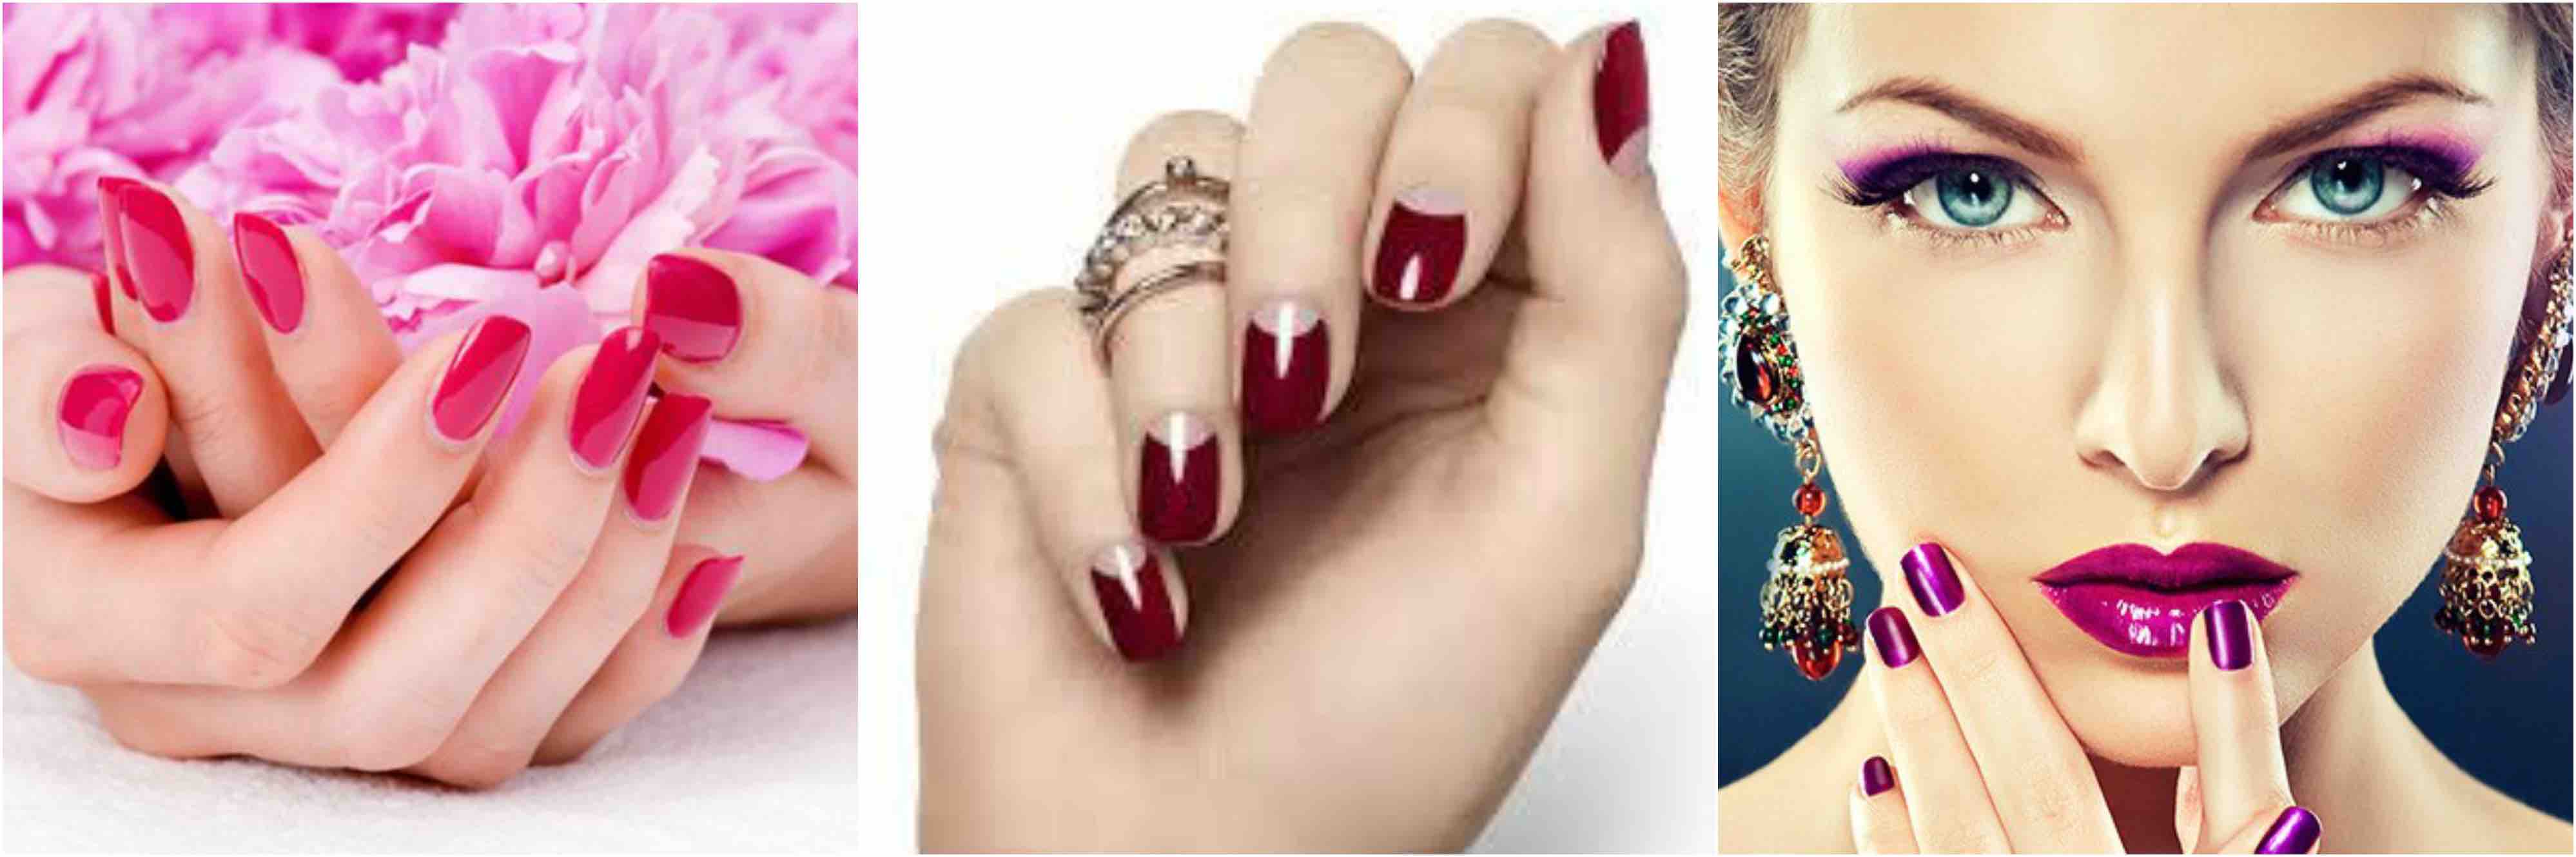 manicure unghie benessere moda